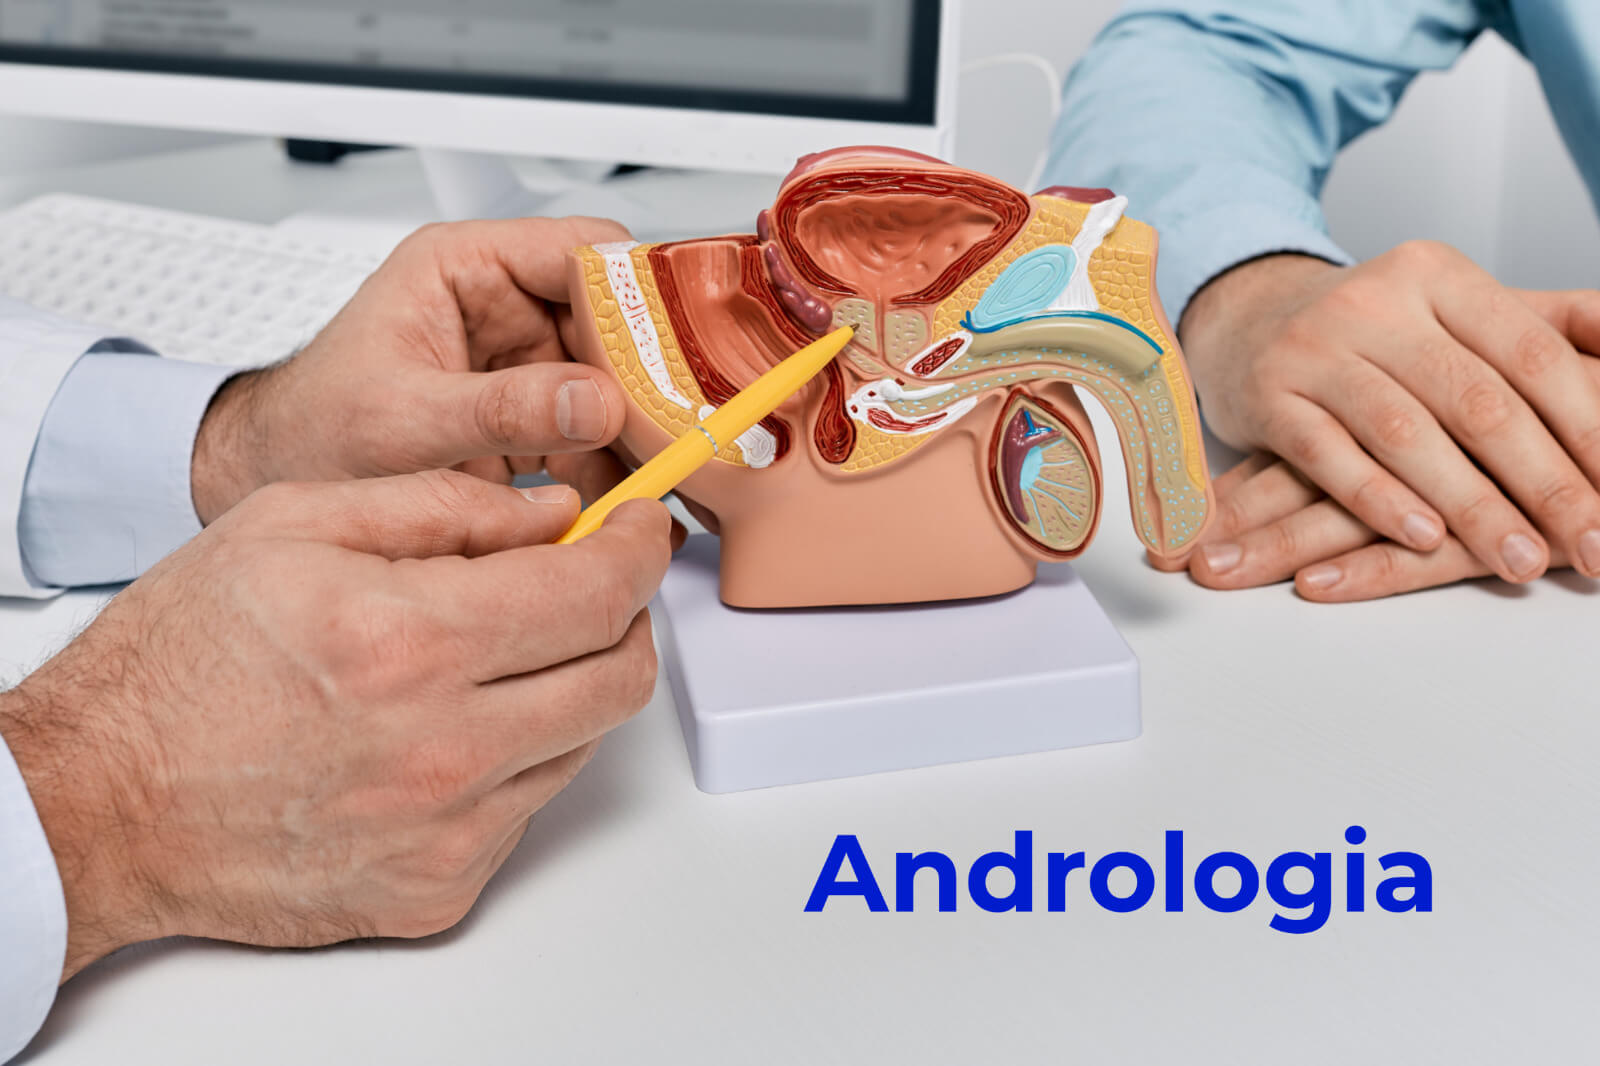 Quais são as principais condições tratadas na andrologia? - Urologista Maringá